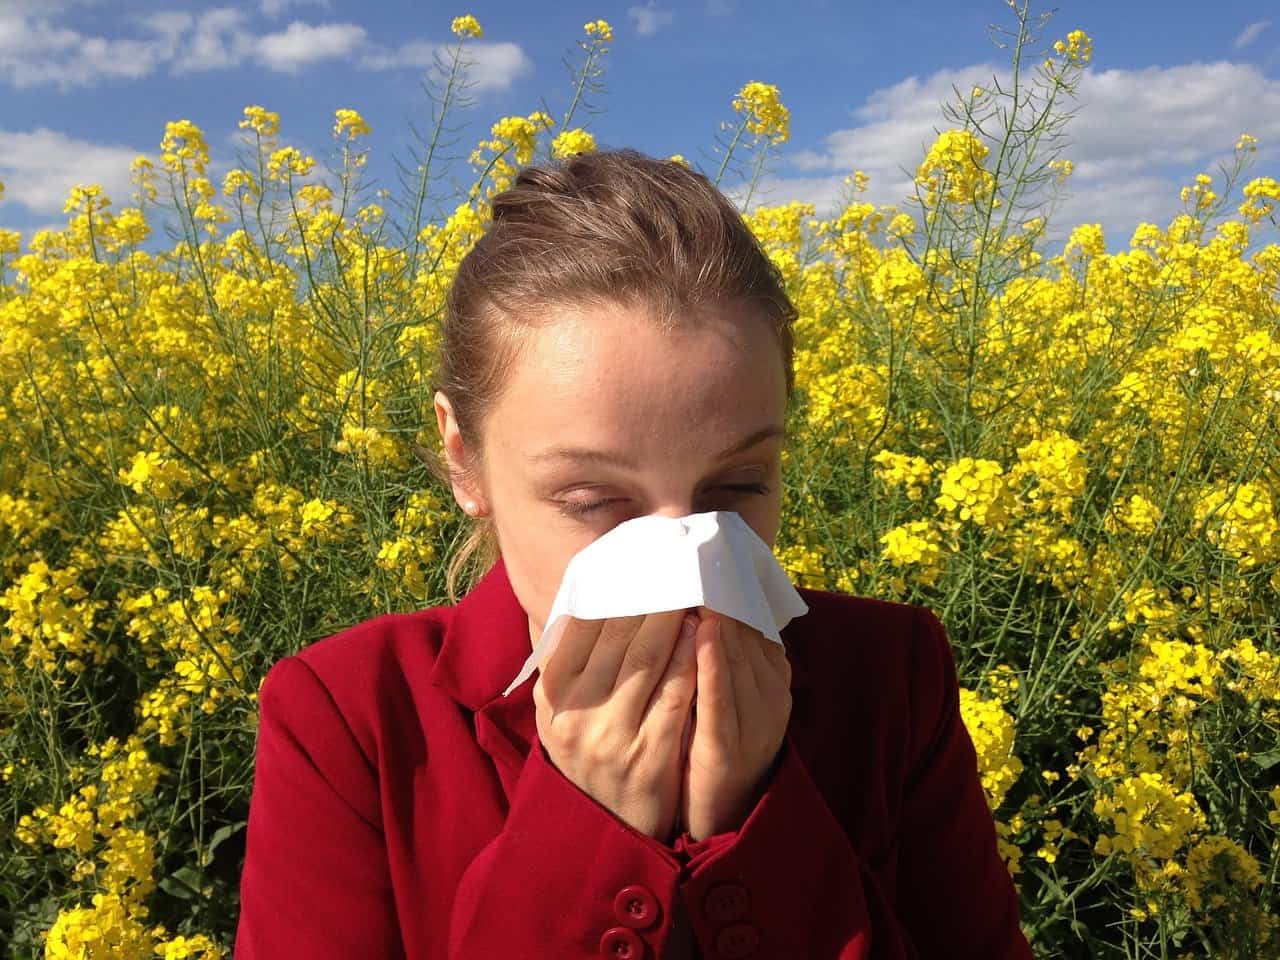 Gut Health and Seasonal Allergies